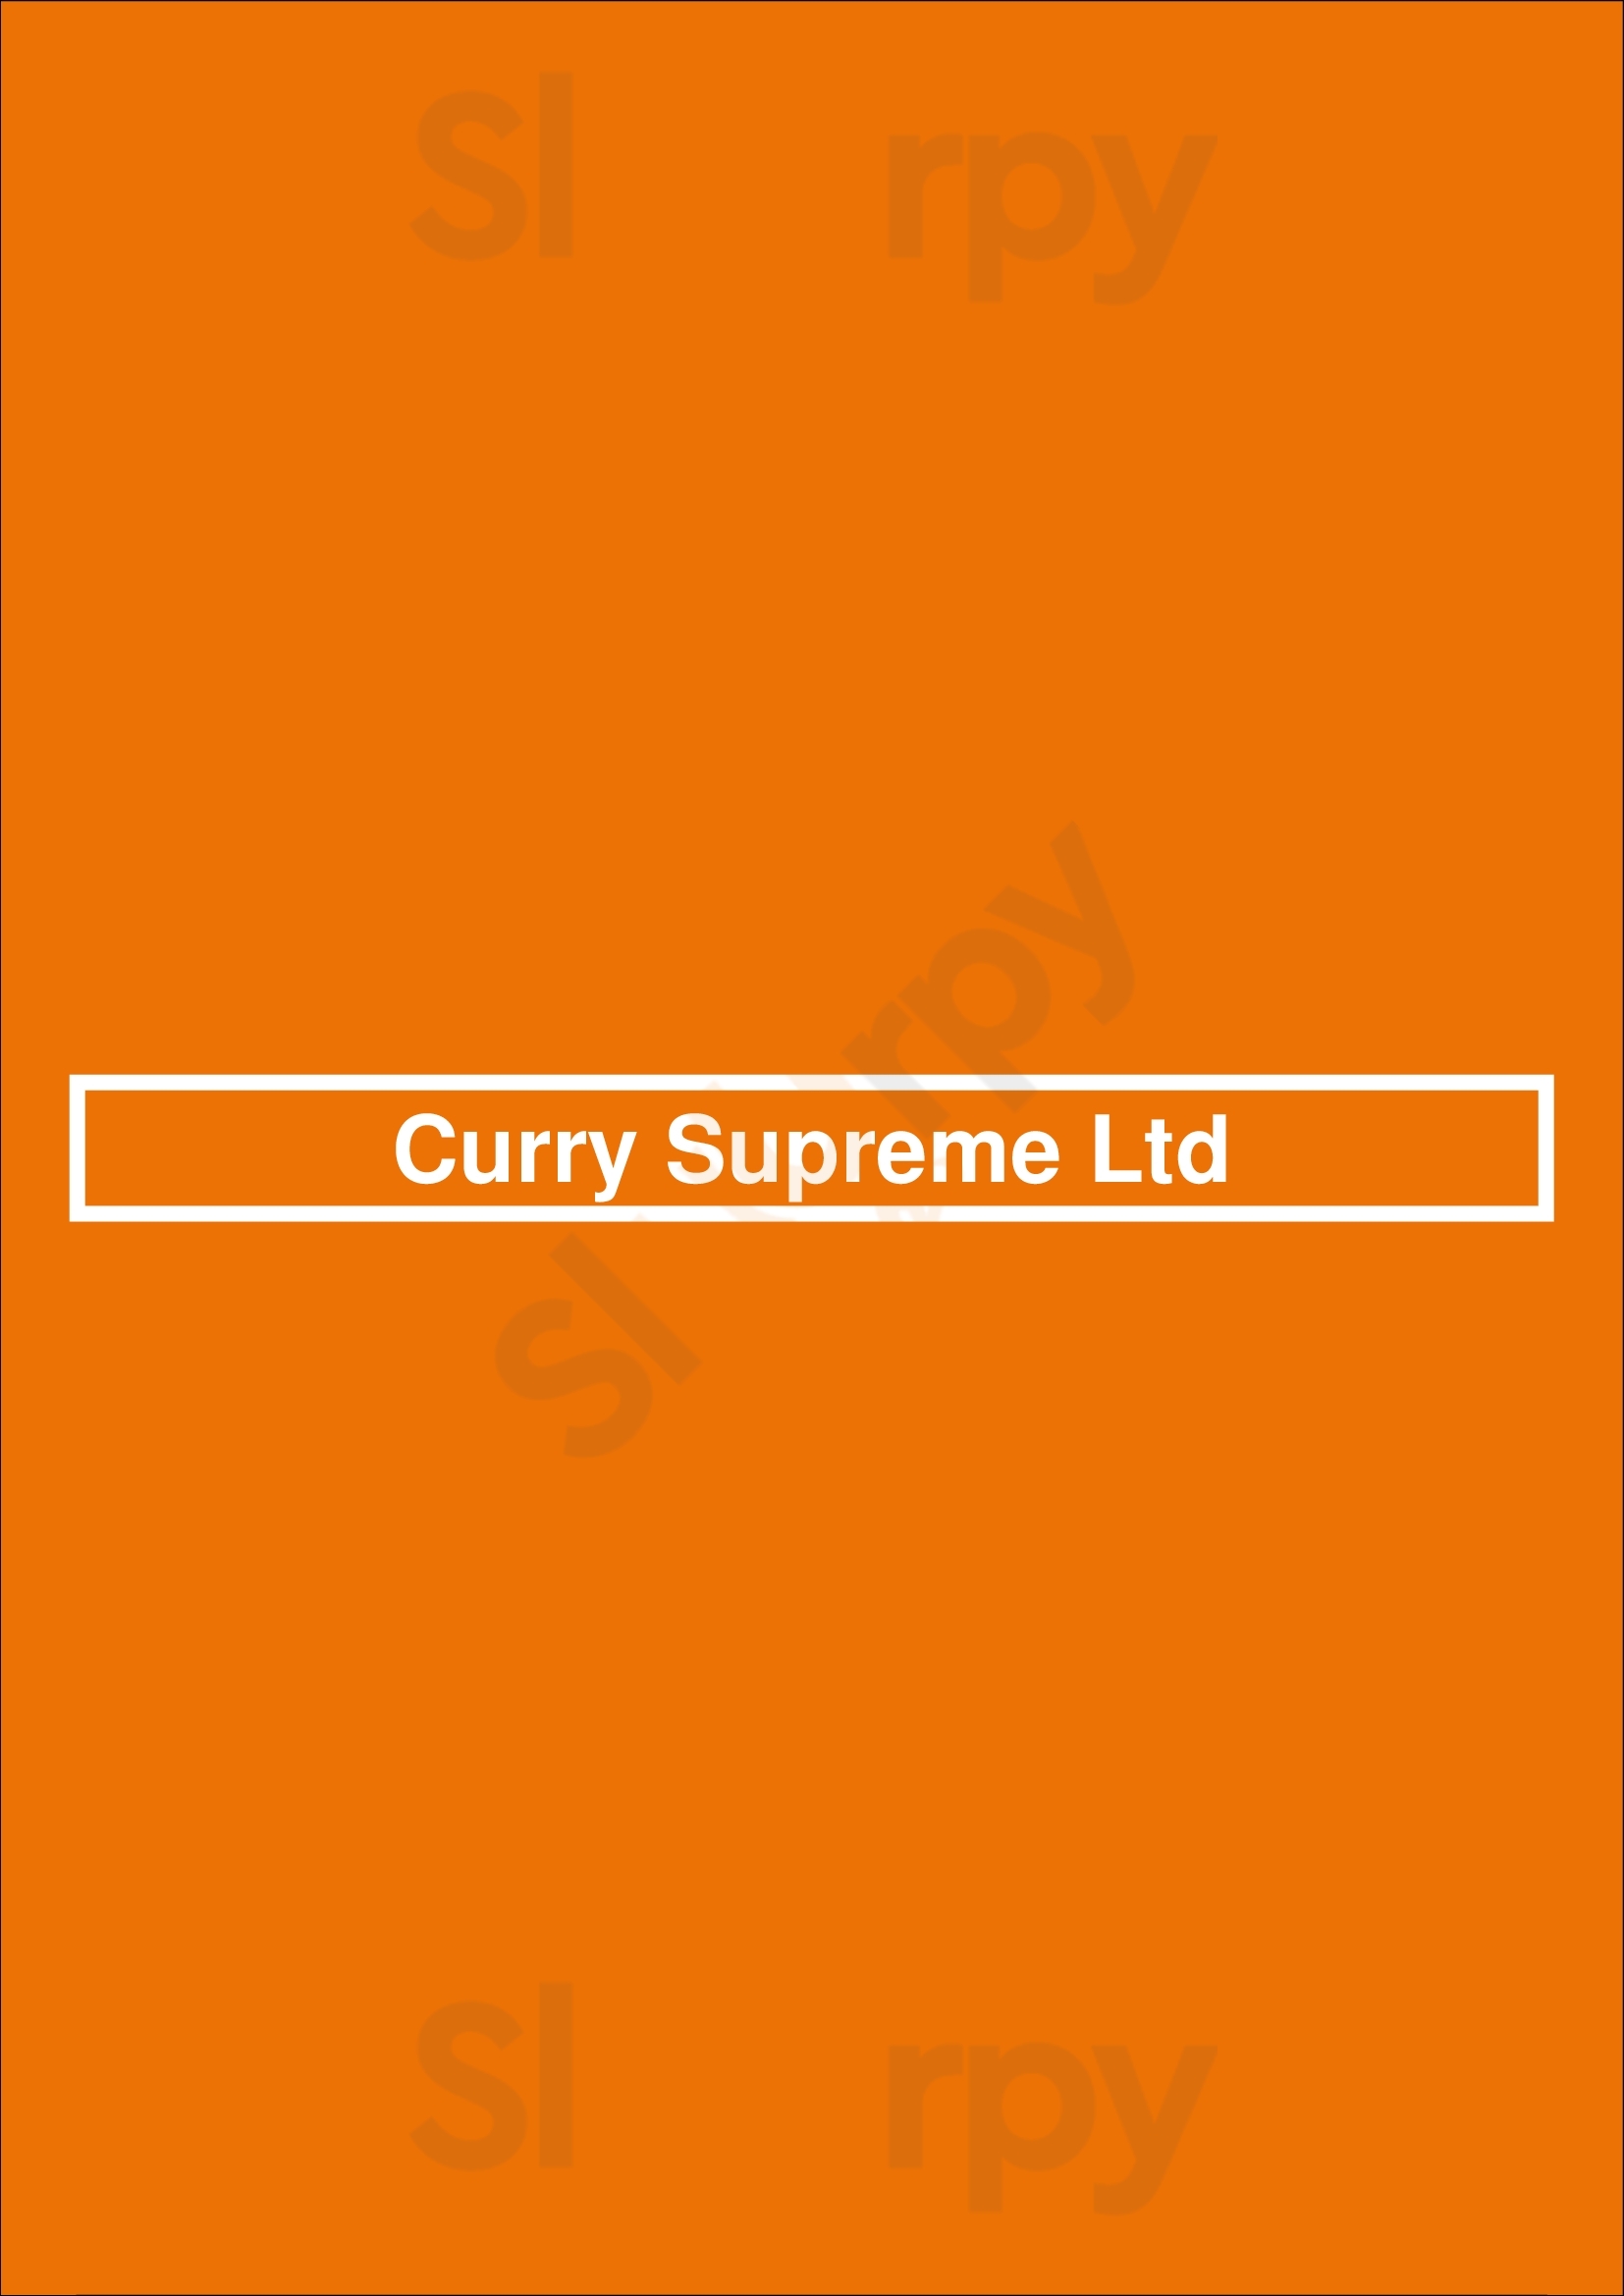 Curry Supreme Staple Hill Menu - 1